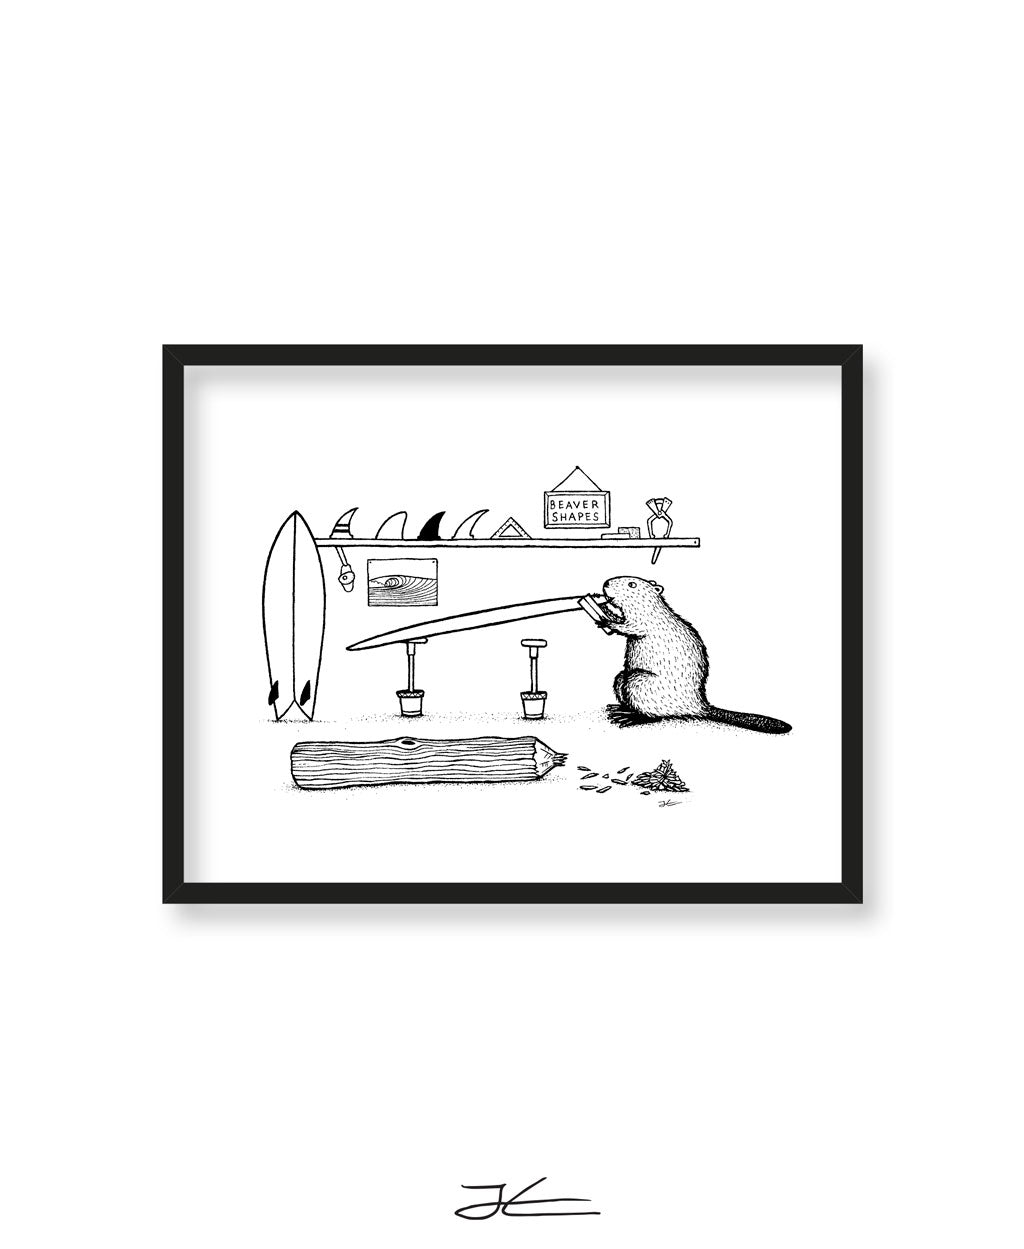 Beaver Shaping Bay - Print/ Framed Print